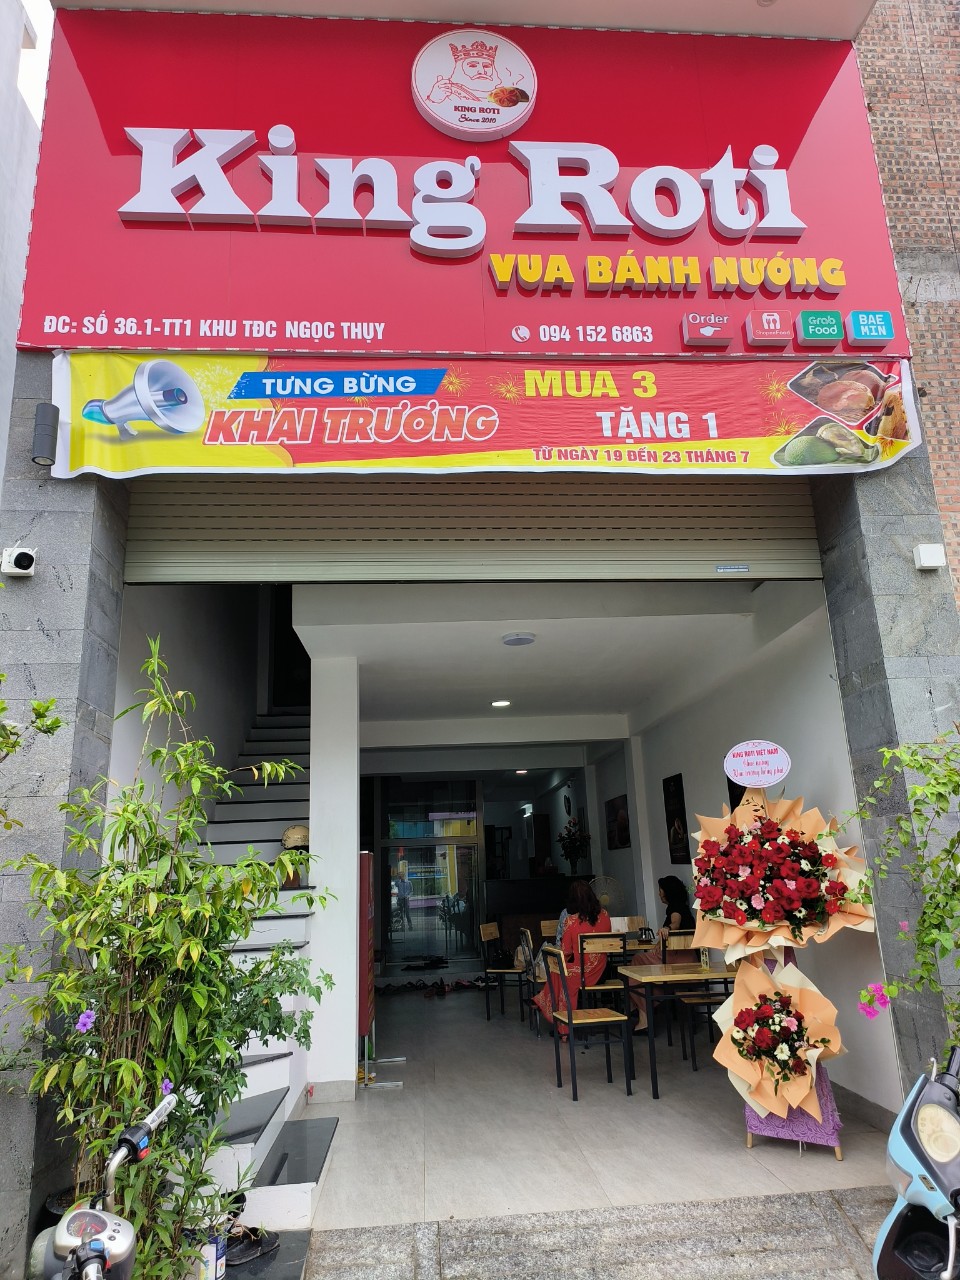 King Roti Long Biên 2